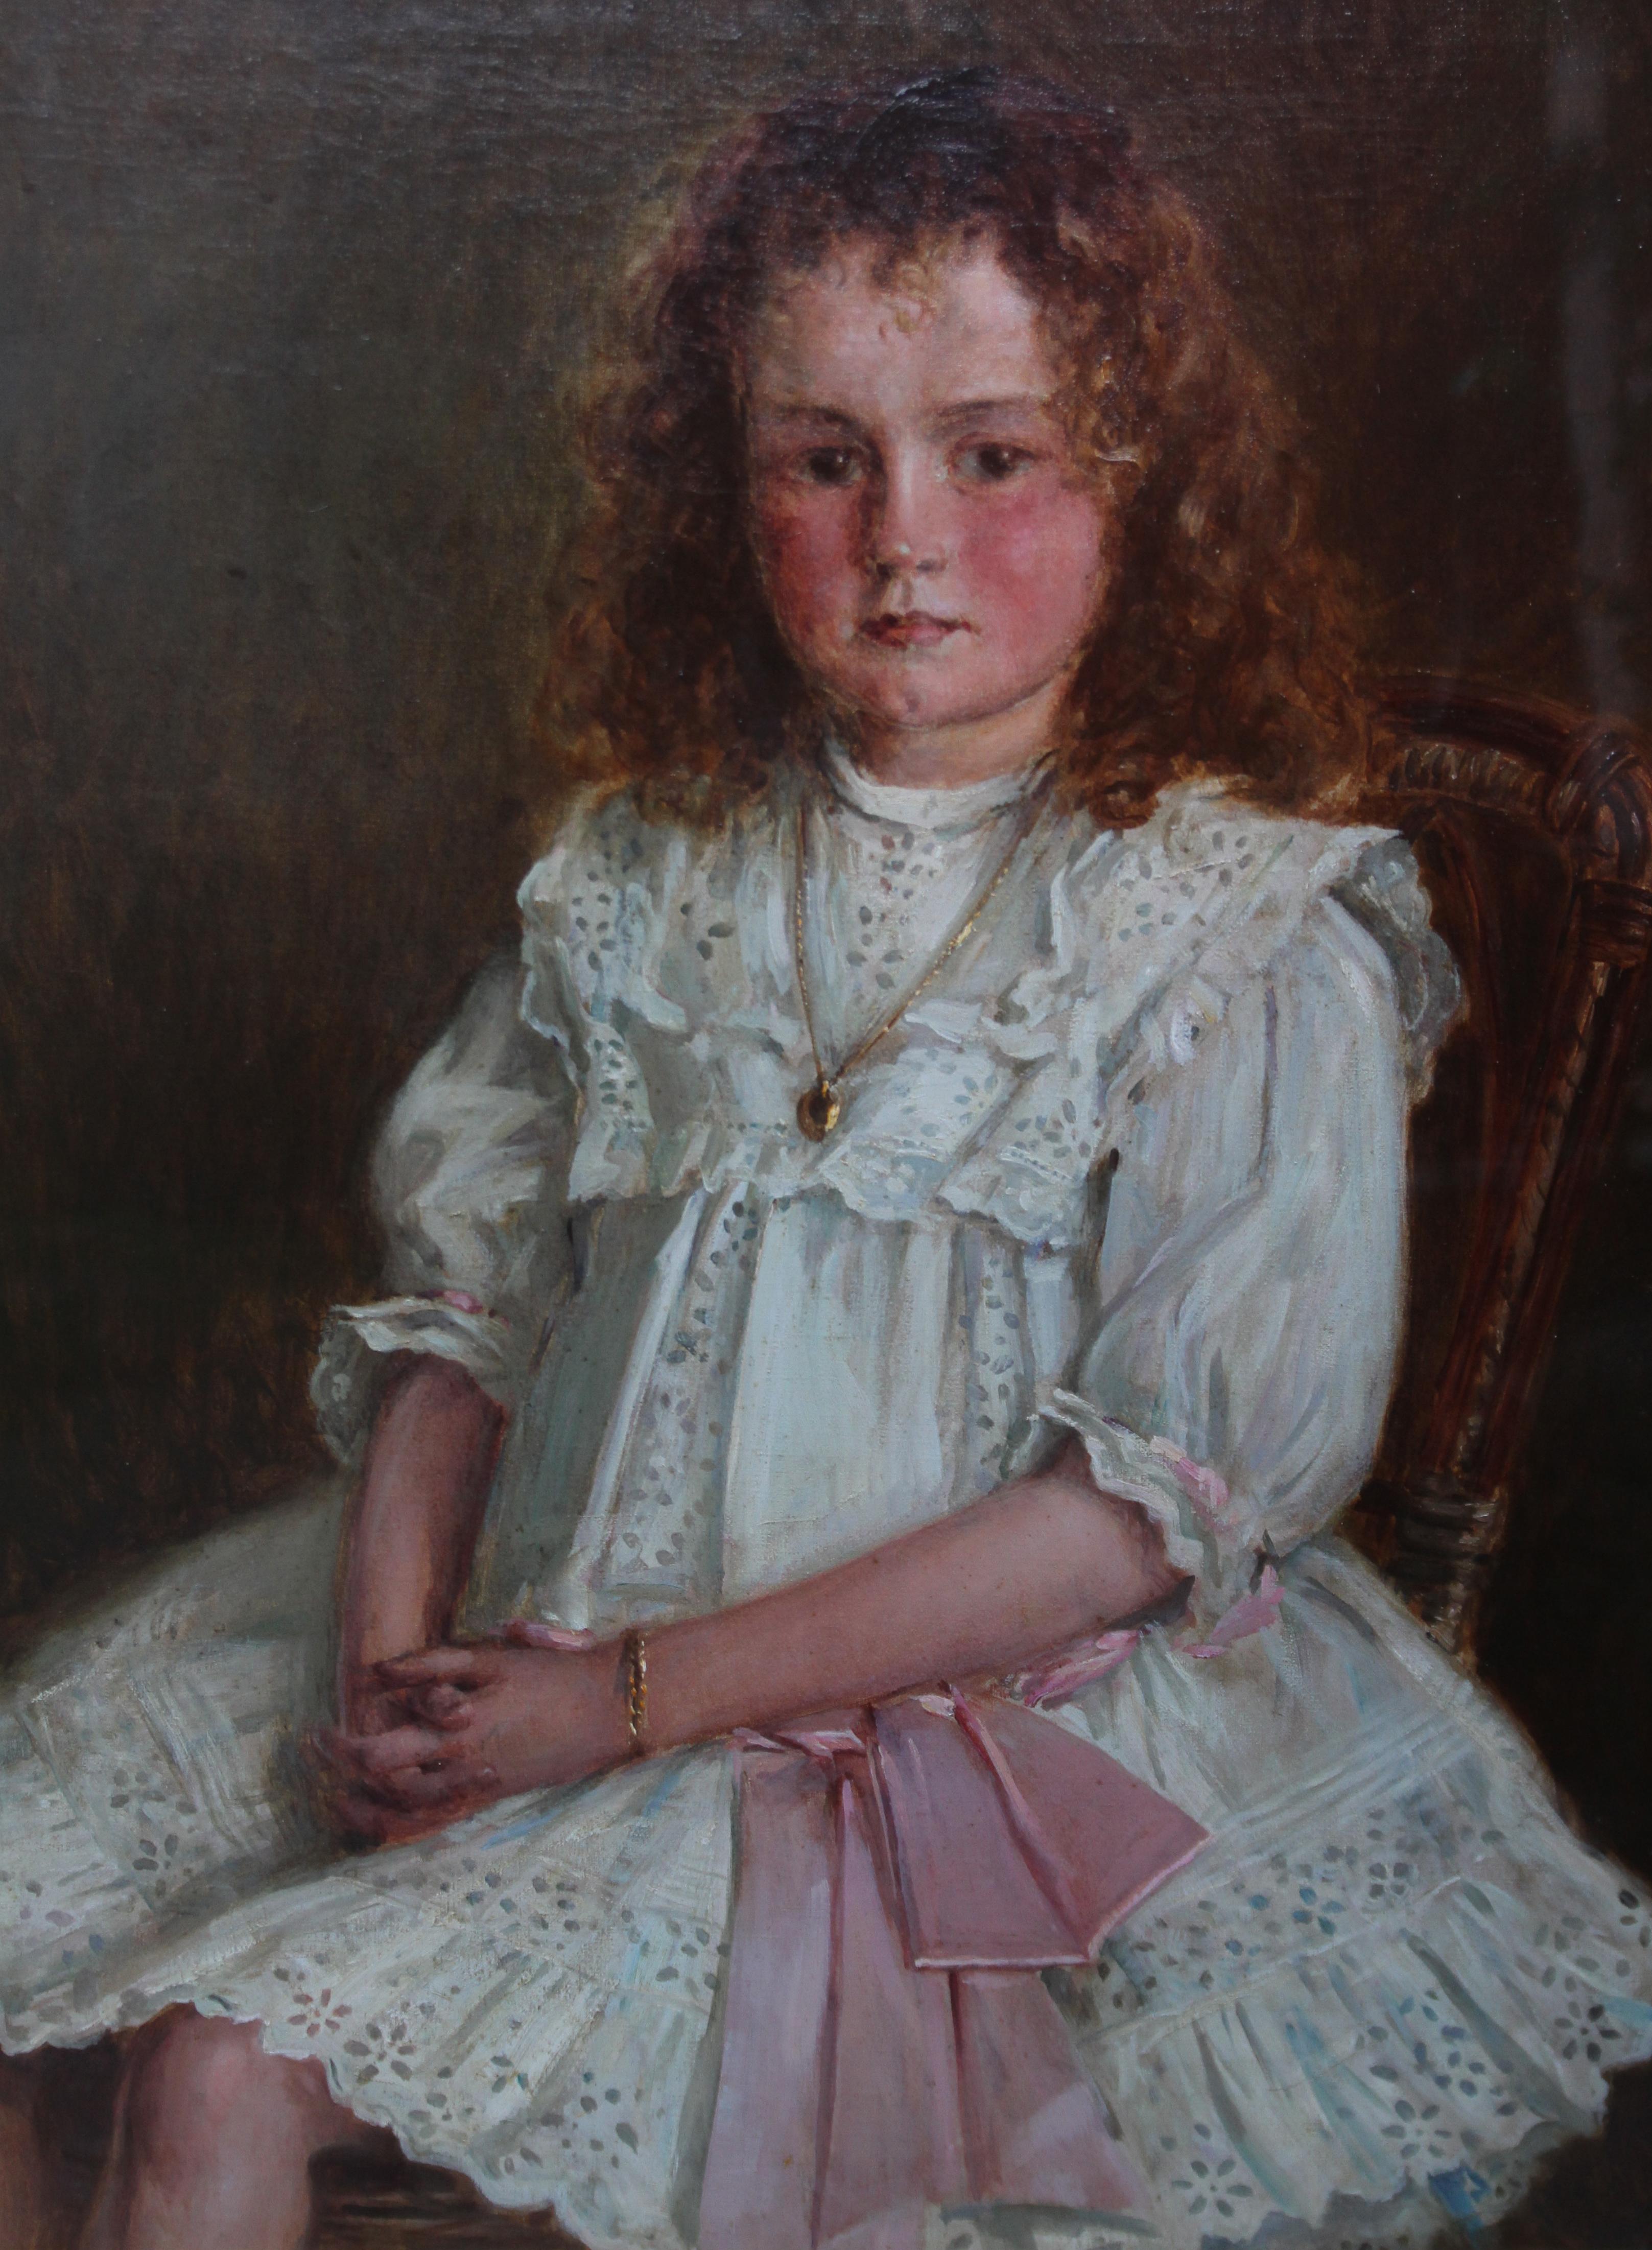 Porträt eines jungen walisischen Mädchens – Enid Richards – britische edwardianische Staithes-Kunst (Realismus), Painting, von Ernest Higgins Rigg